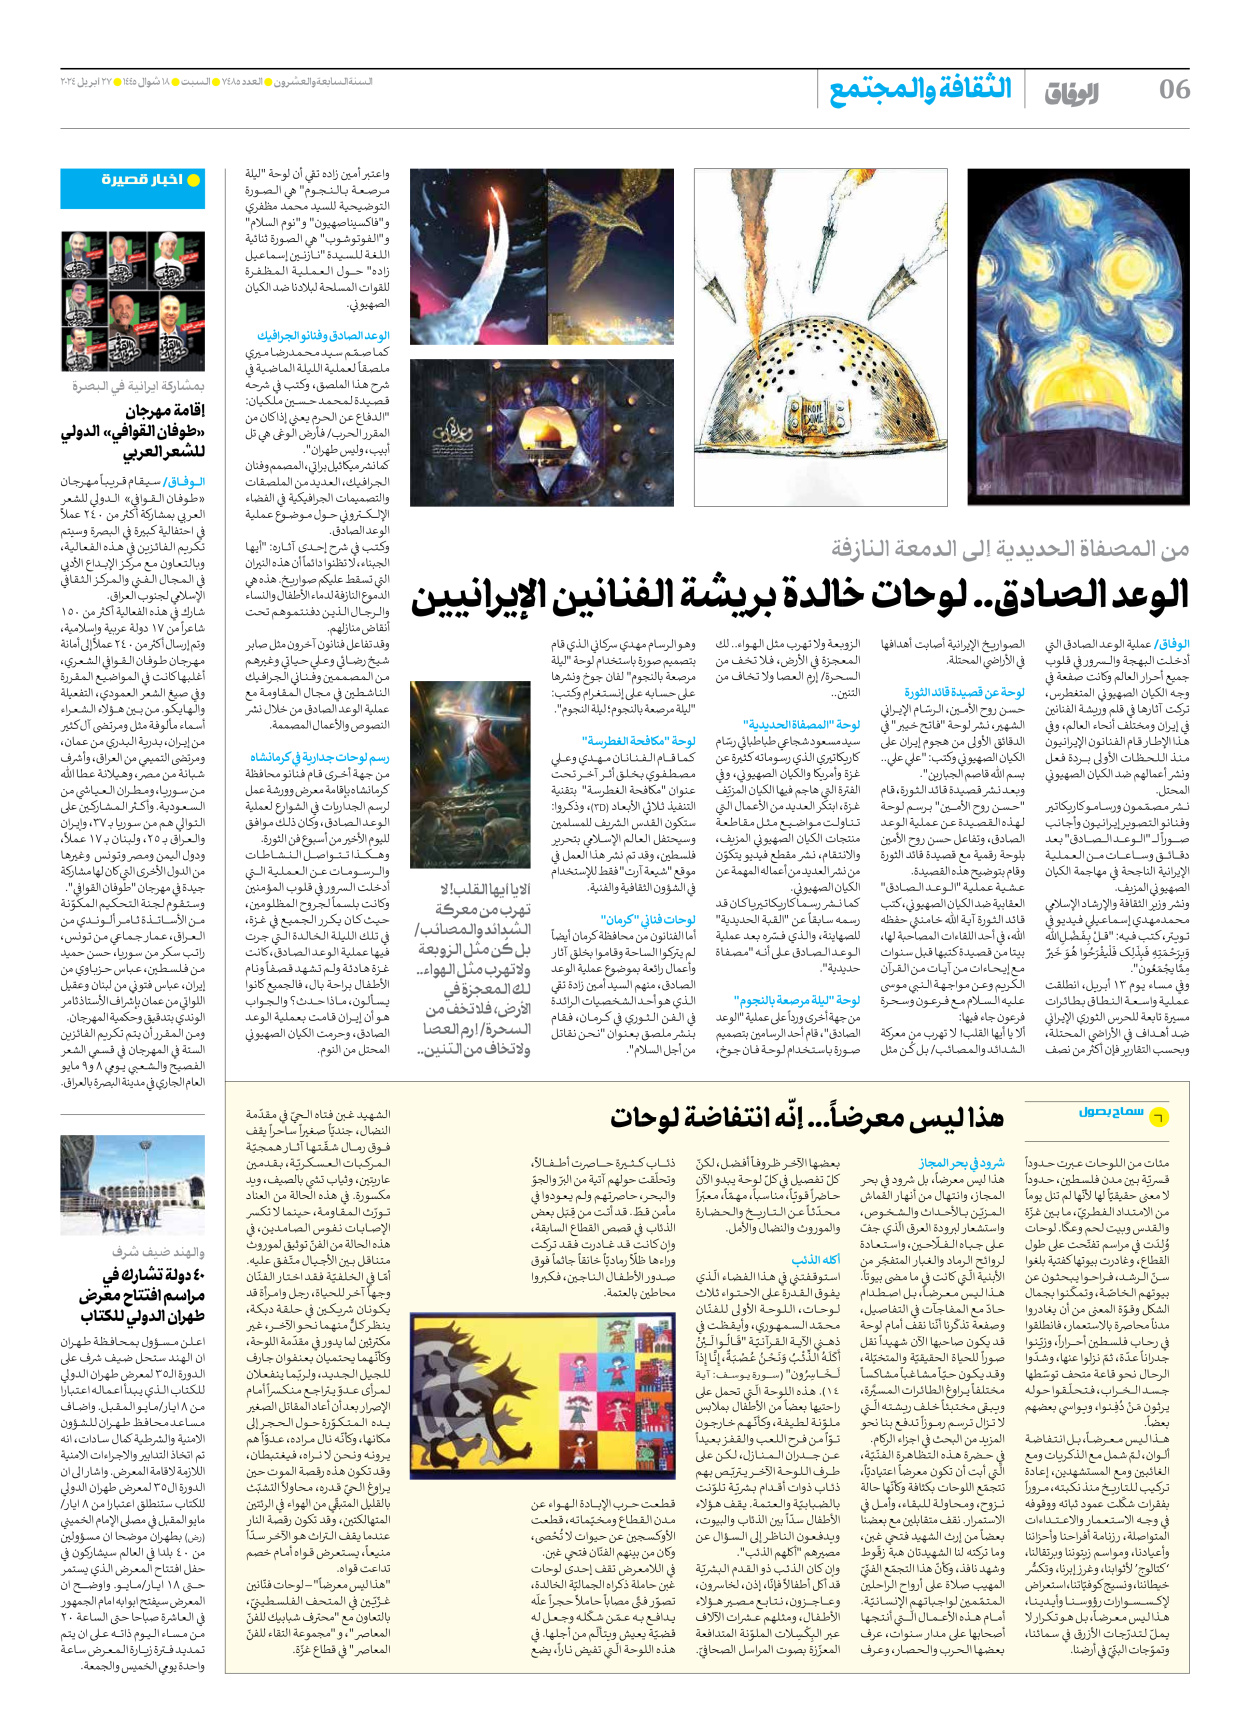 صحیفة ایران الدولیة الوفاق - العدد سبعة آلاف وأربعمائة وخمسة وثمانون - ٢٧ أبريل ٢٠٢٤ - الصفحة ٦